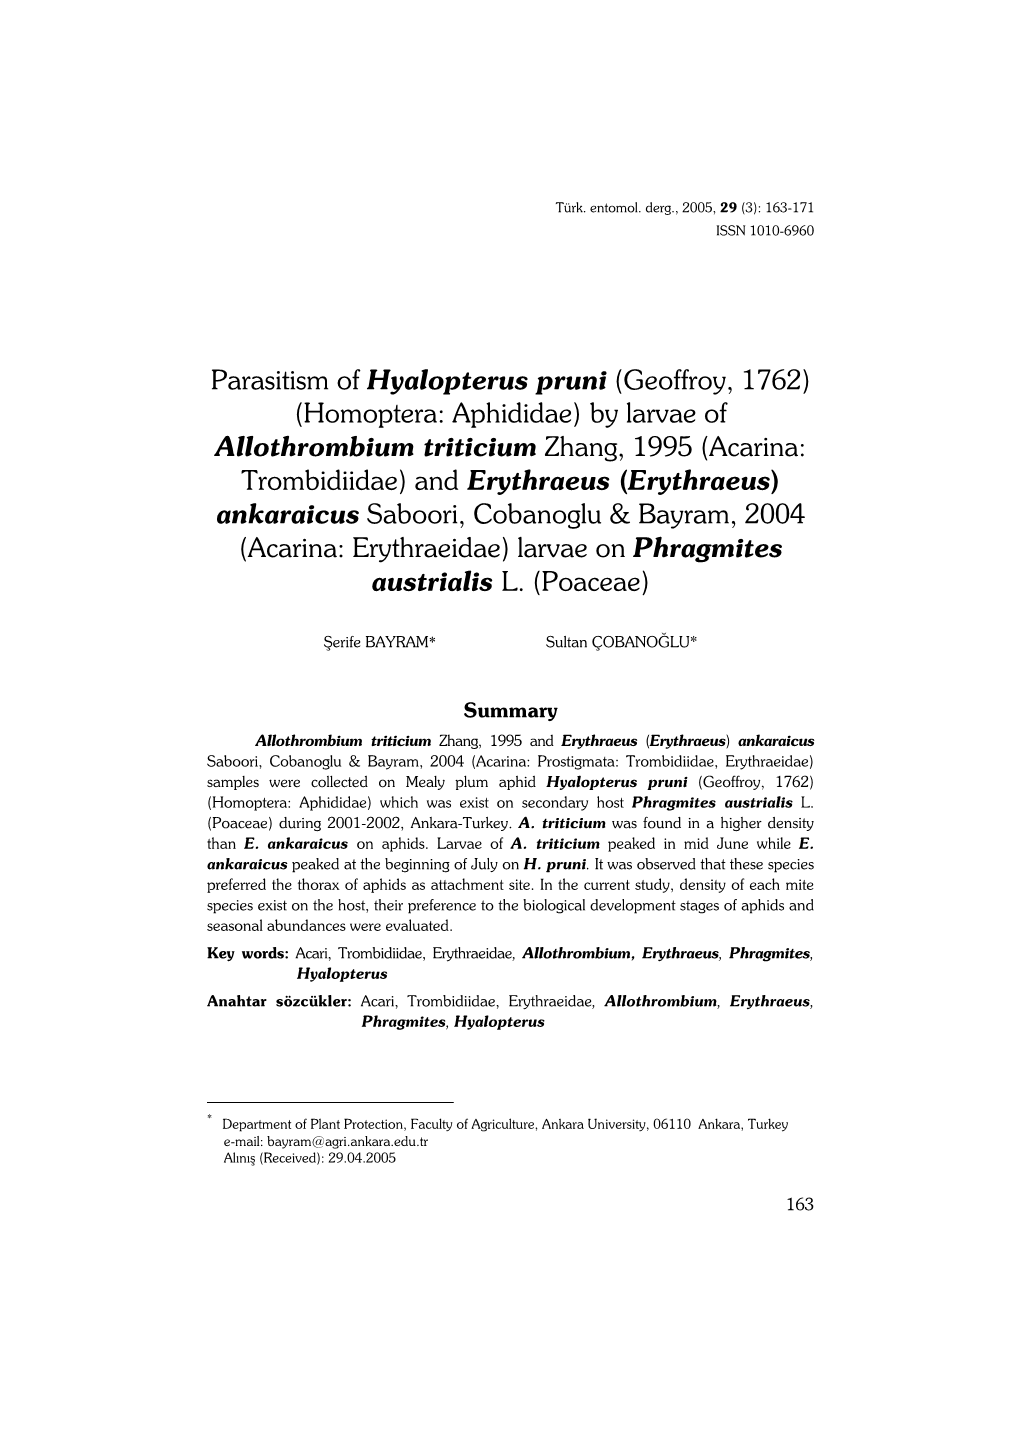 Parasitism of Hyalopterus Pruni